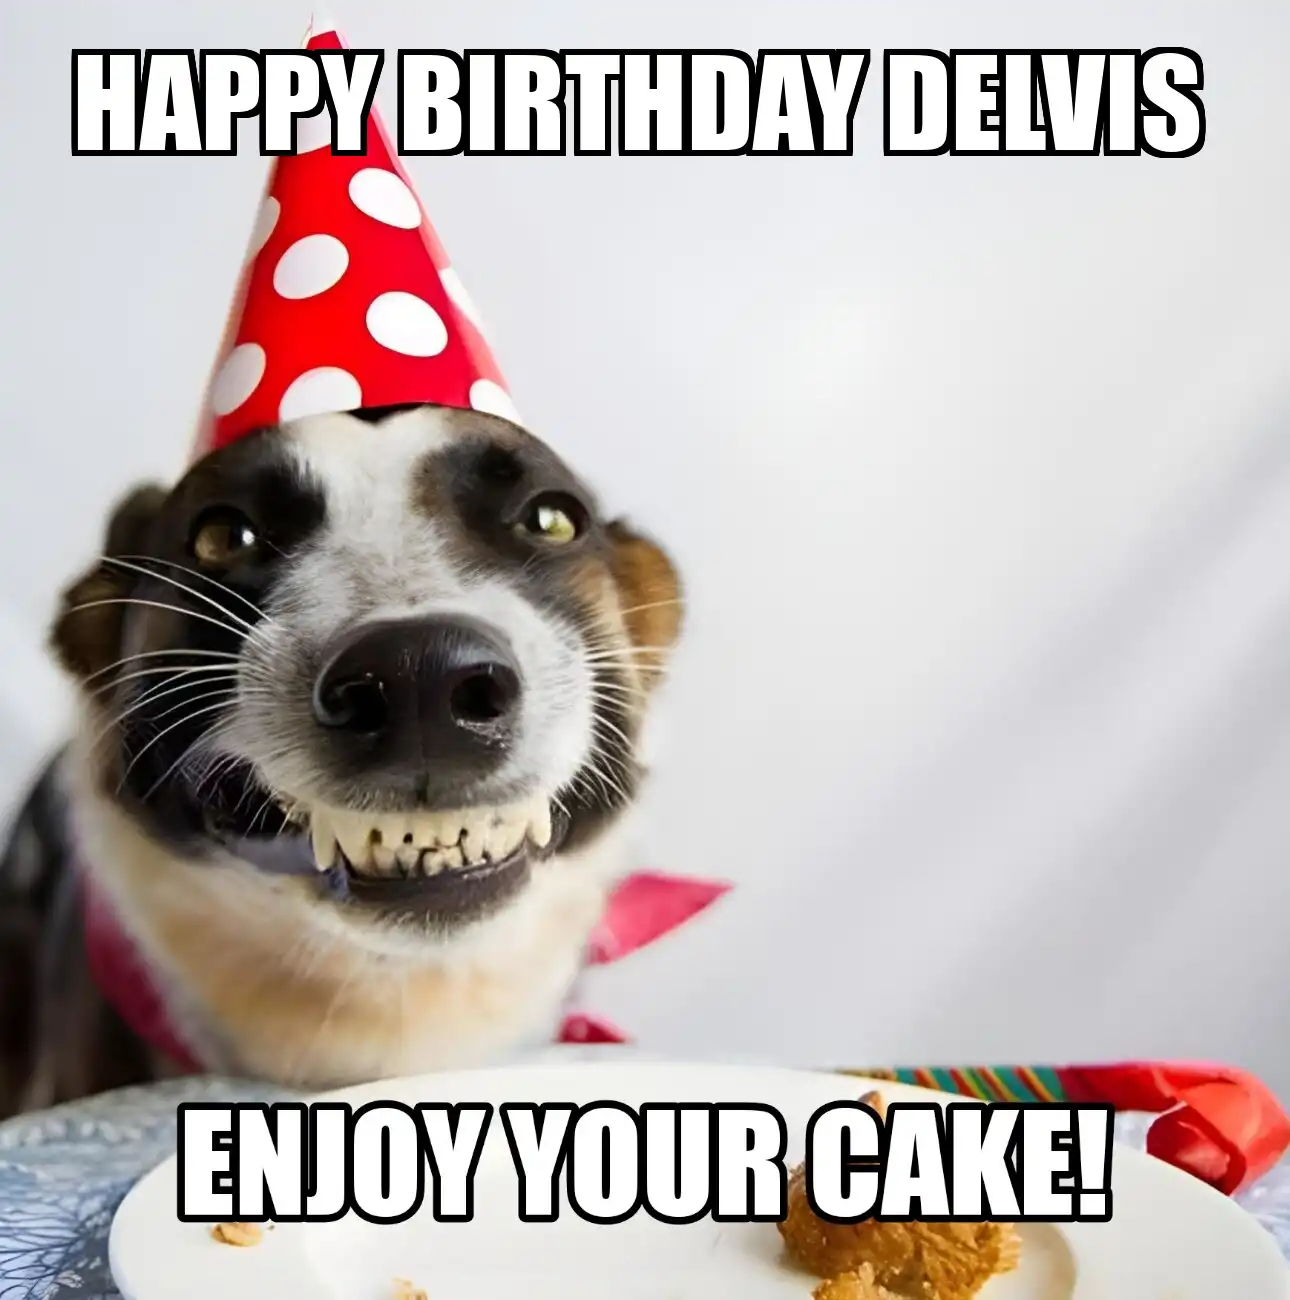 Happy Birthday Delvis Enjoy Your Cake Dog Meme